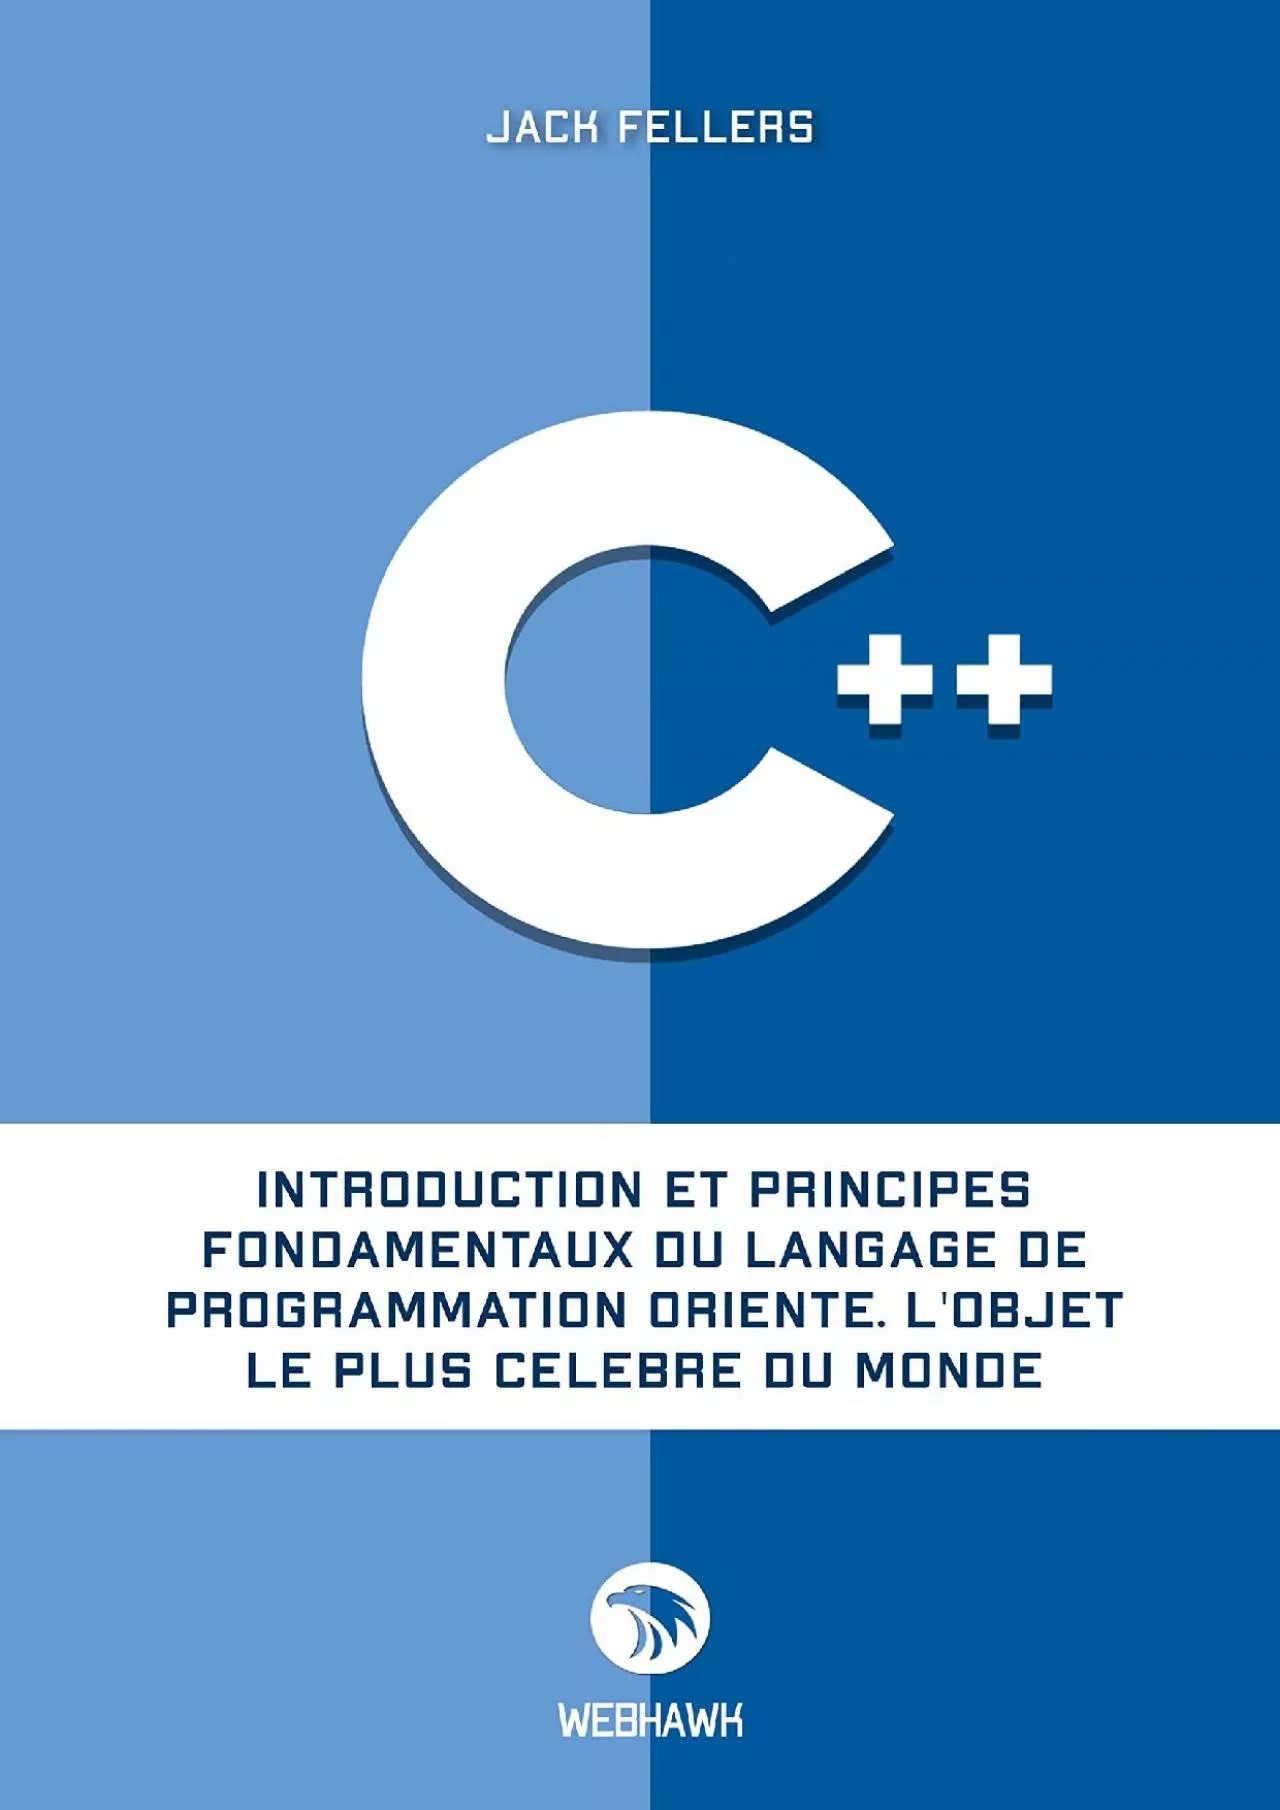 [DOWLOAD]-C++: Introduction et principes fondamentaux du langage de programmation orienté.